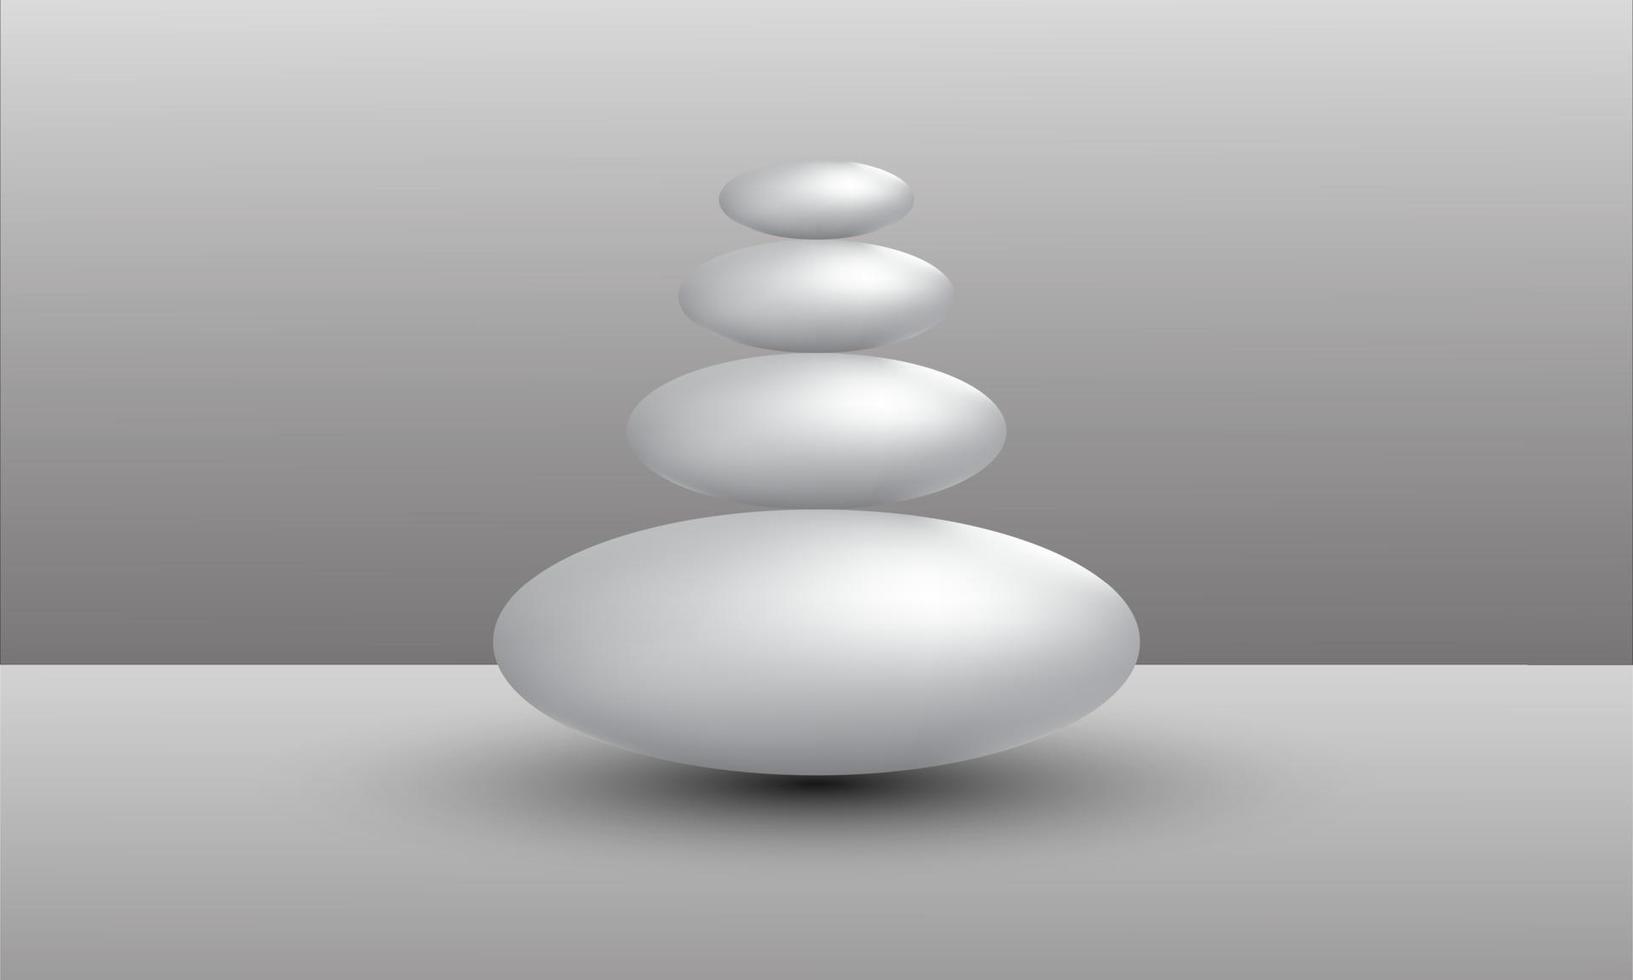 3d illustratie van ballen van verschillende grootte die in ruimte hangen. 3D-rendering geïsoleerd op een witte achtergrond. vector